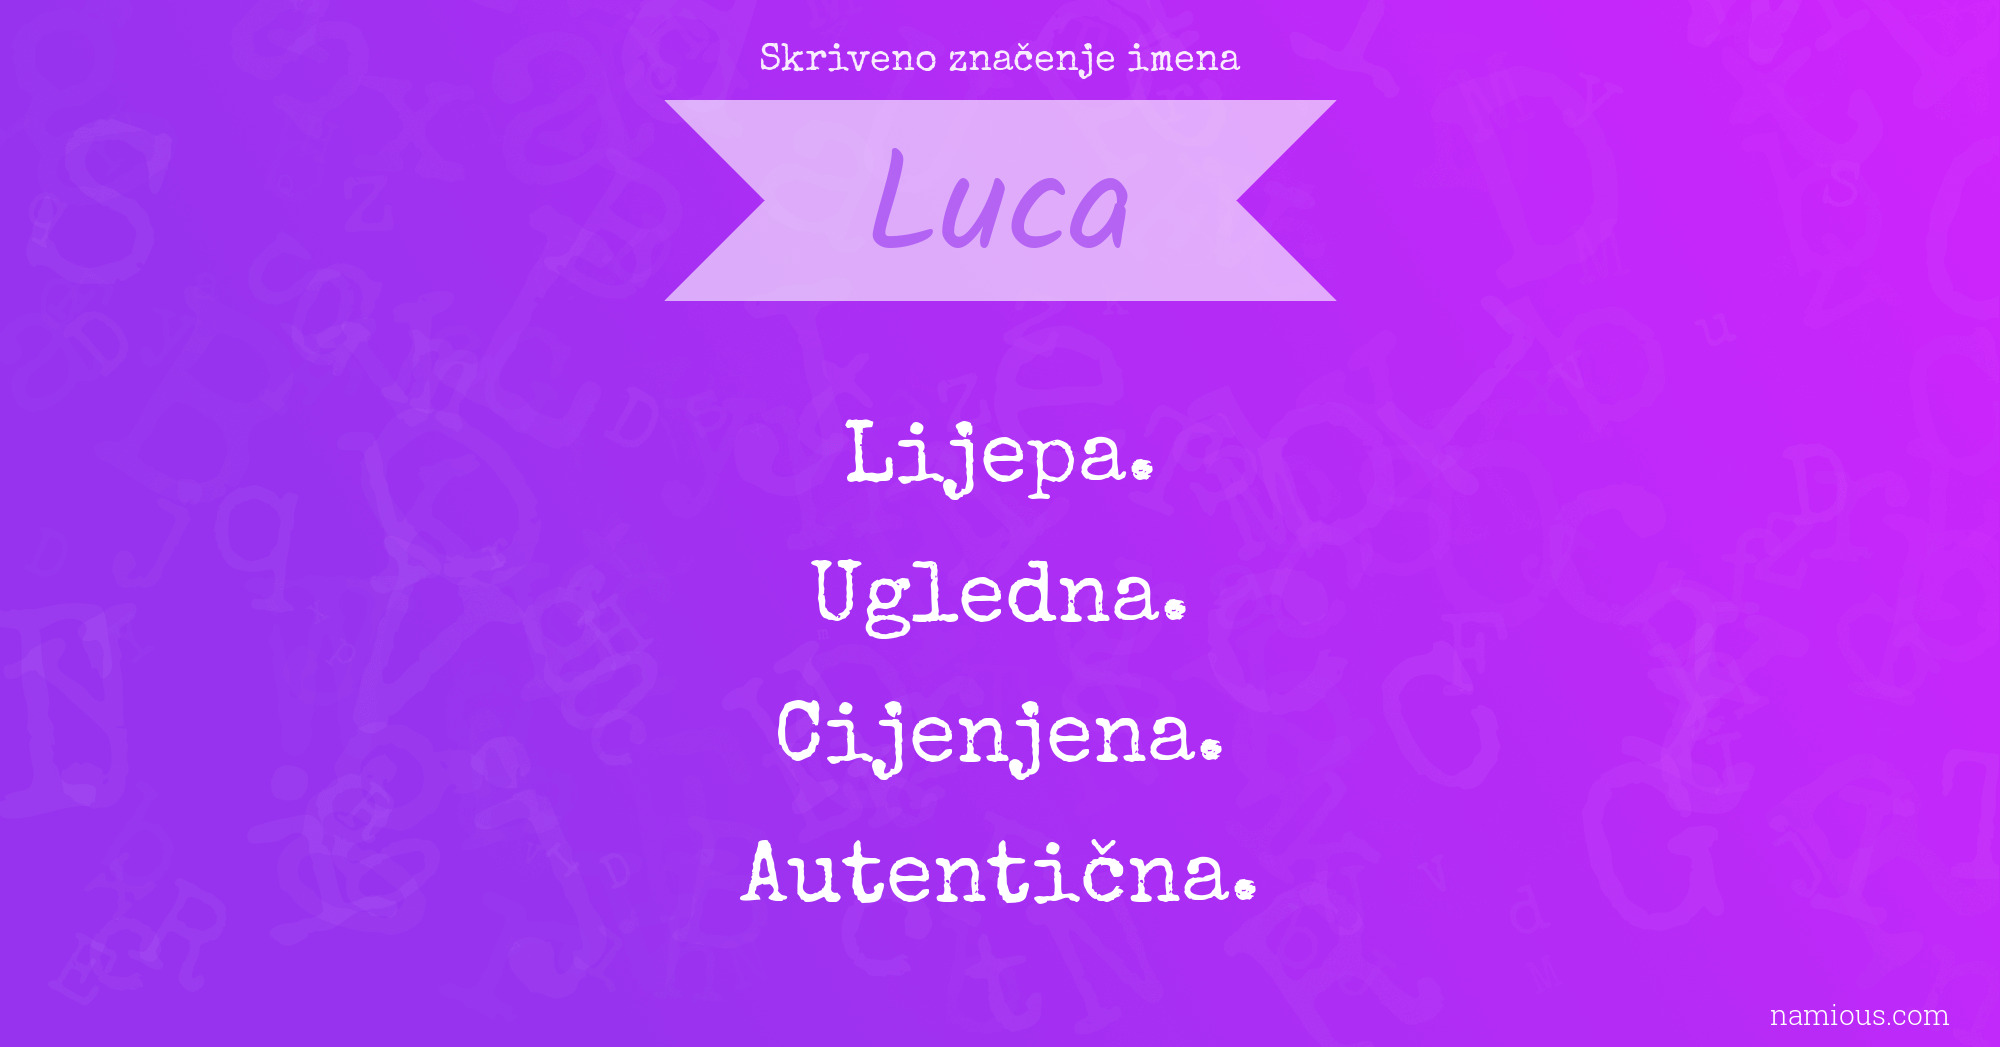 Skriveno značenje imena Luca